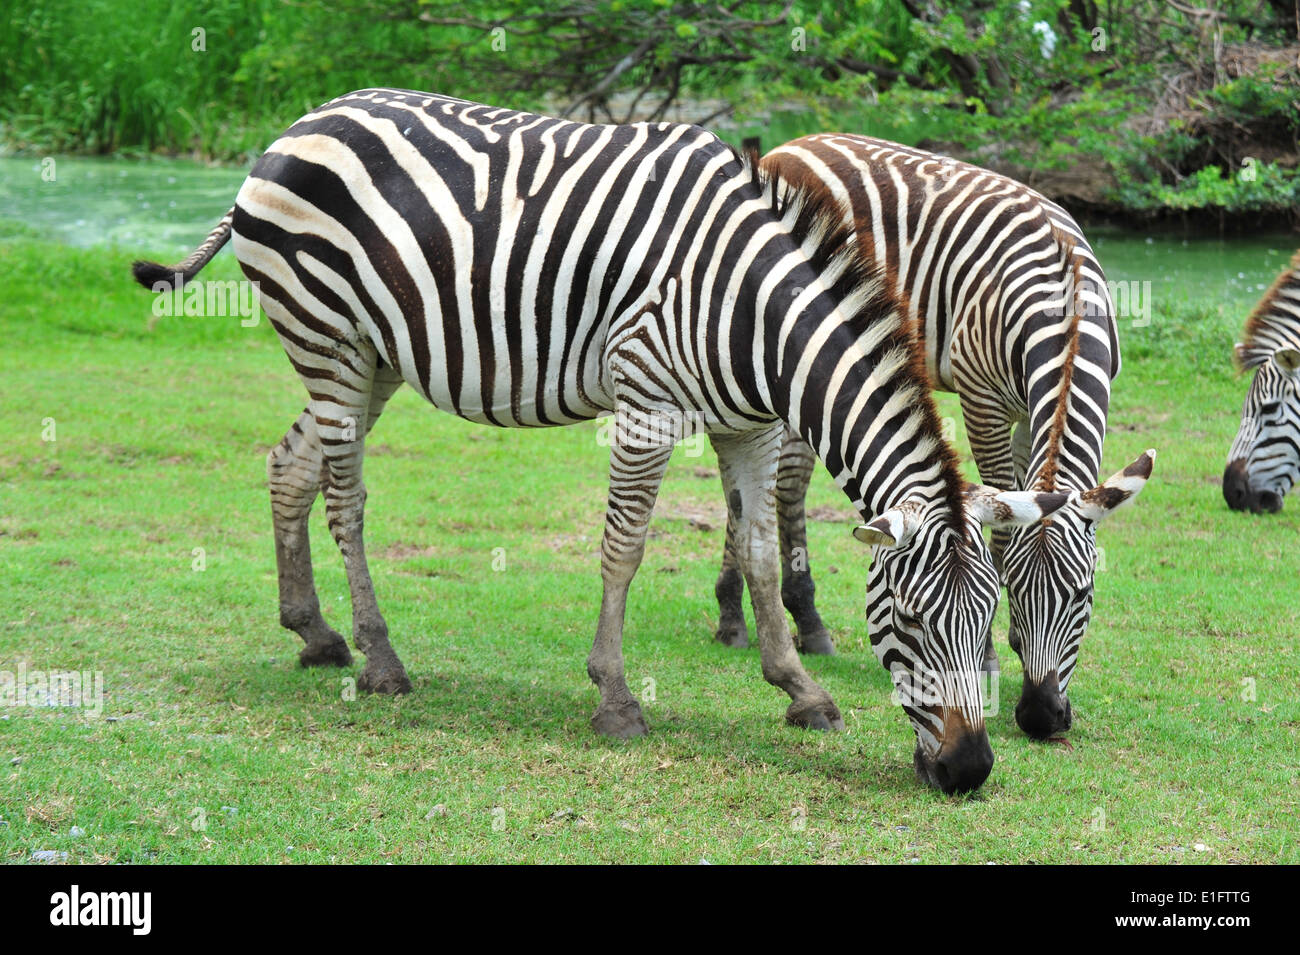 zebra eating grass Stock Photo